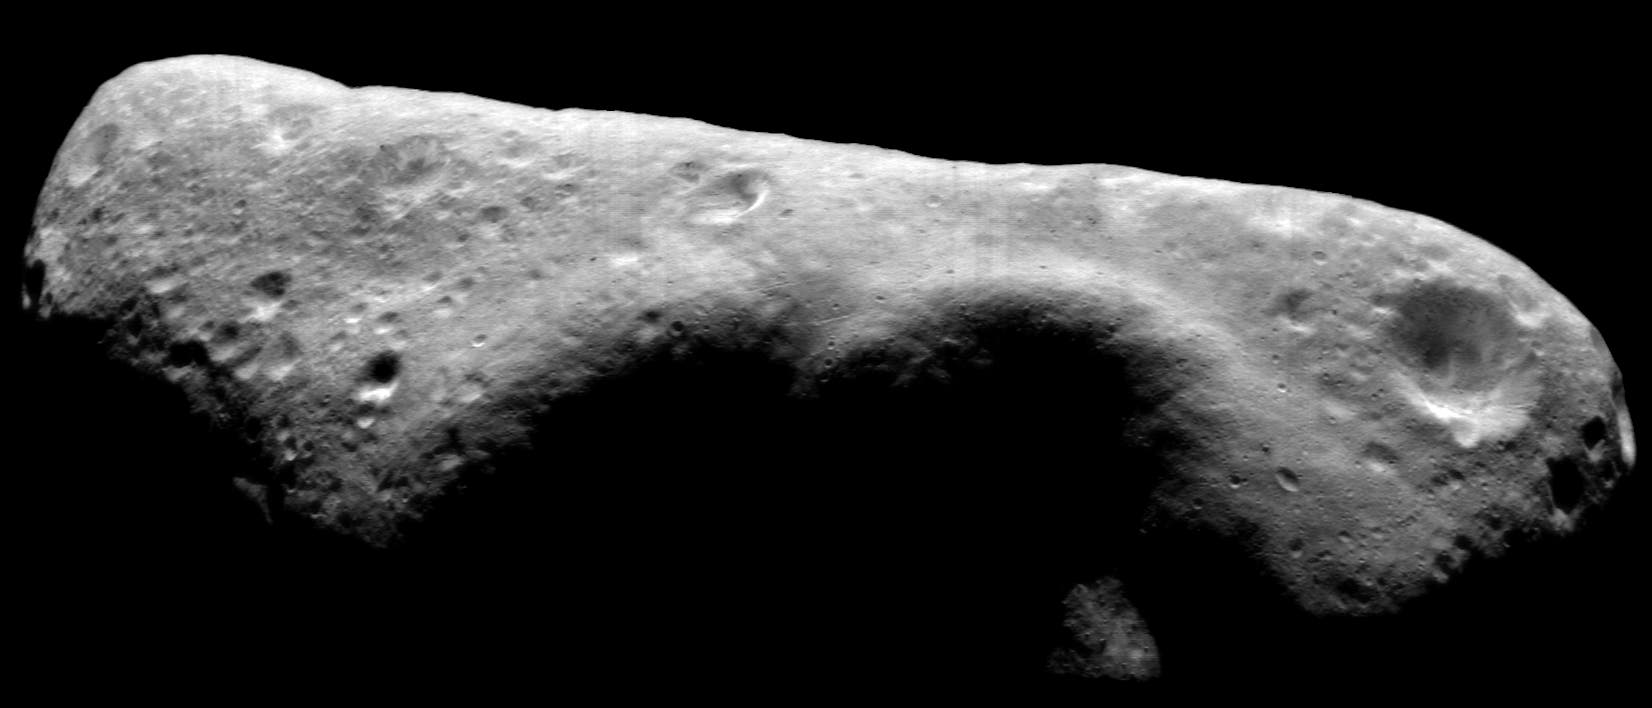 Asteroid 433 Eros (Symbolbild)